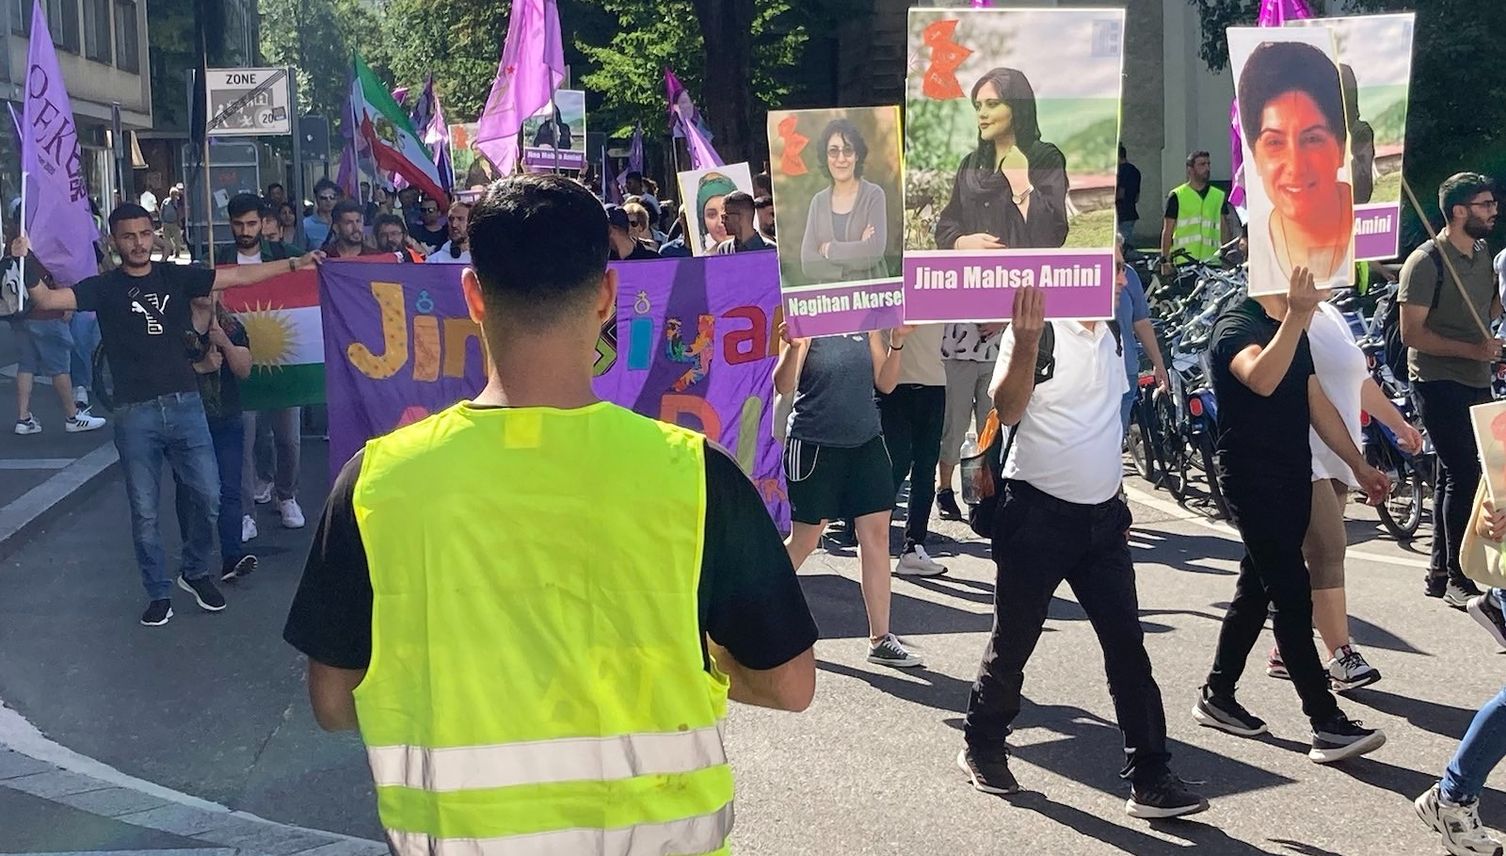 Rund 200 Personen demonstrieren in Luzern gegen den Iran